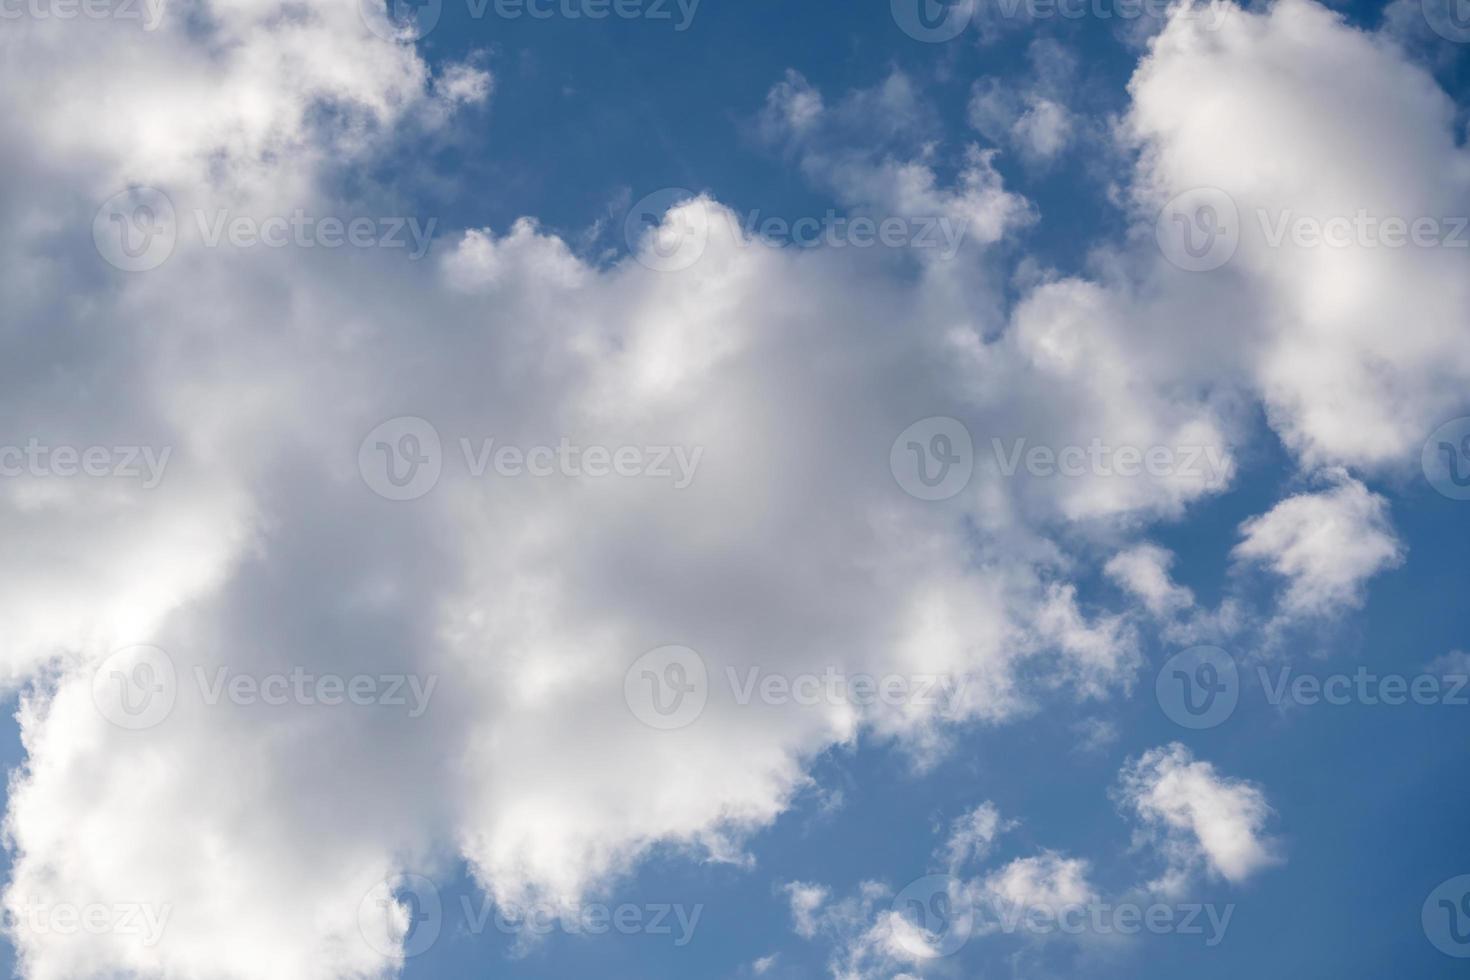 nuages blancs avec ciel bleu photo